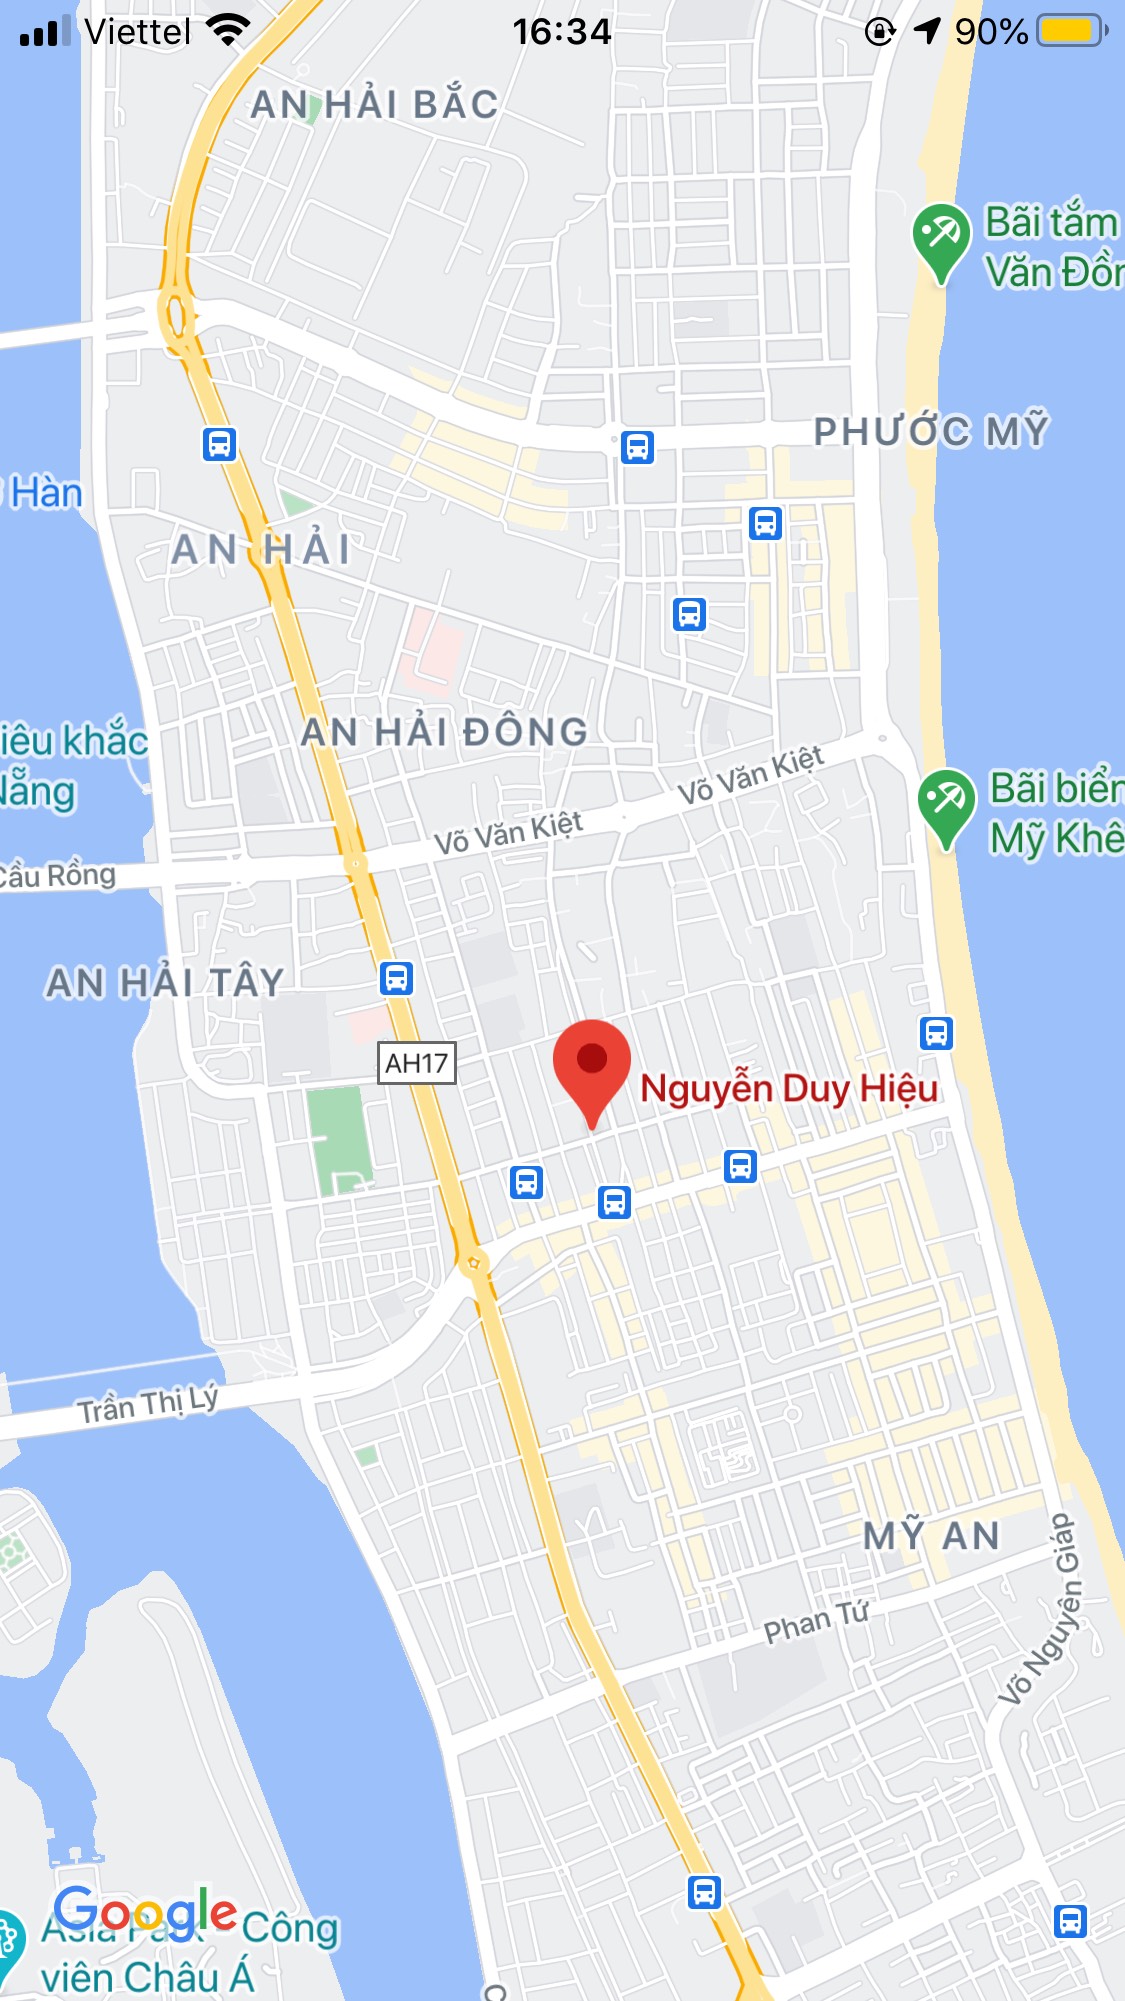 Bán nhà mặt tiền đường Nguyễn Duy Hiệu, gần chợ An Hải Đông. DT: 142m2. Giá: 11,36 tỷ